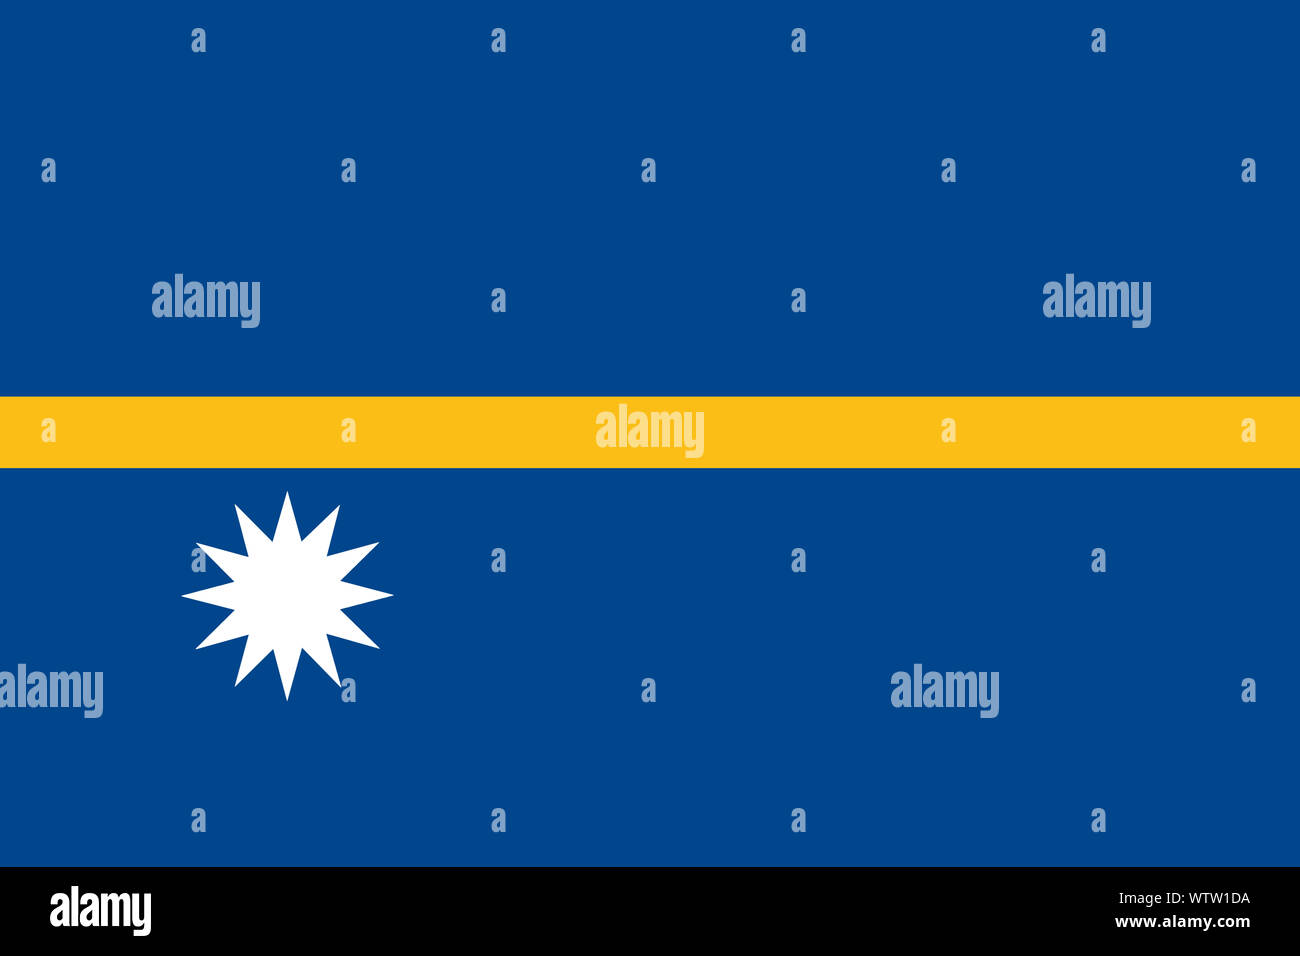 Un drapeau bleu Nauru background illustration bande jaune étoile blanche Banque D'Images